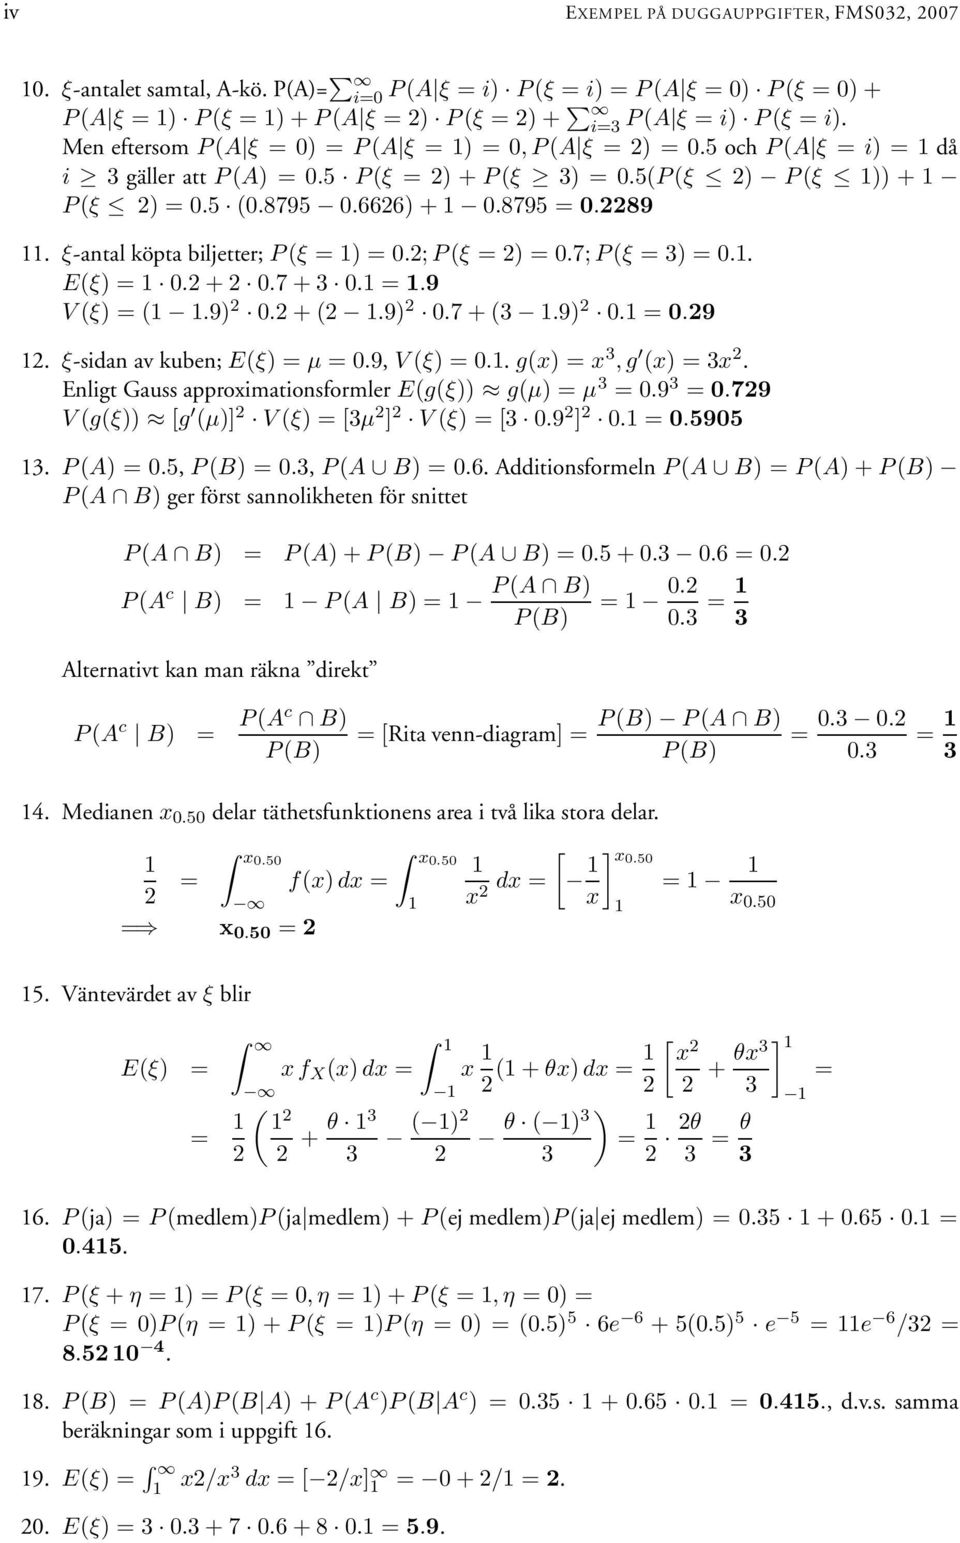 ξ-antal köpta biljetter; P (ξ = ) = 0.; P (ξ = ) = 0.7; P (ξ = ) = 0.. E(ξ) = 0. + 0.7 + 0. =.9 V (ξ) = (.9) 0. + (.9) 0.7 + (.9) 0. = 0.9. ξ-sidan av kuben; E(ξ) = µ = 0.9, V (ξ) = 0.